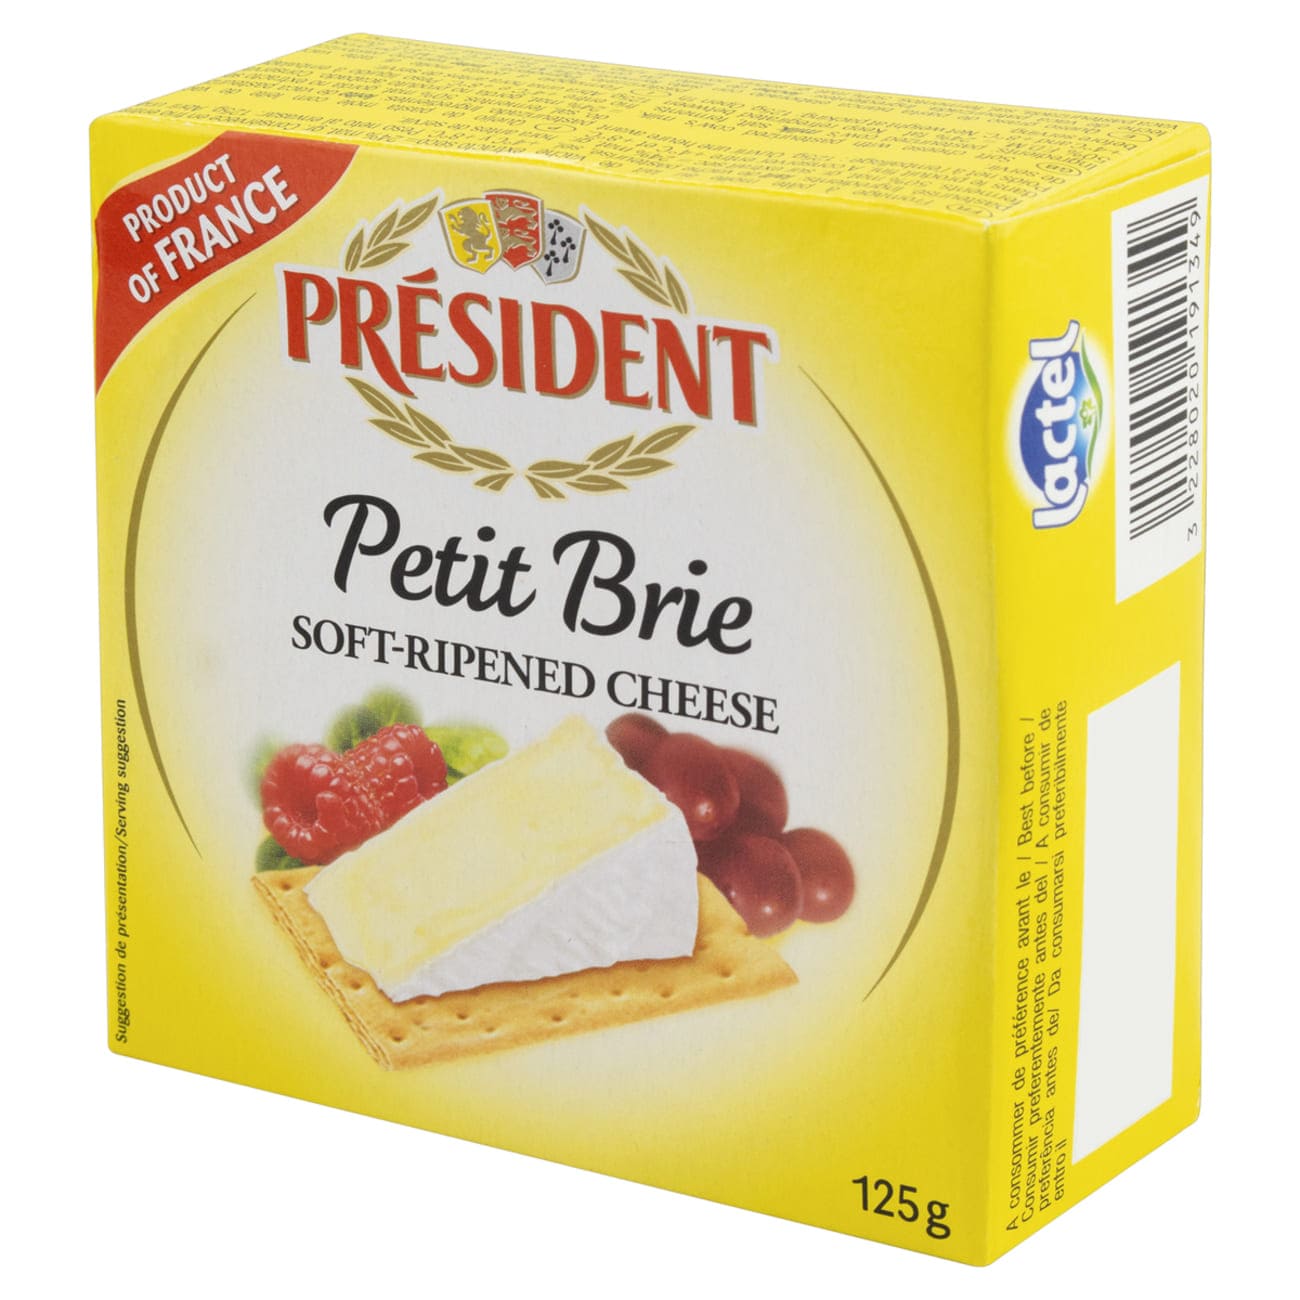 Queijo Petit Brie Prsident 125g